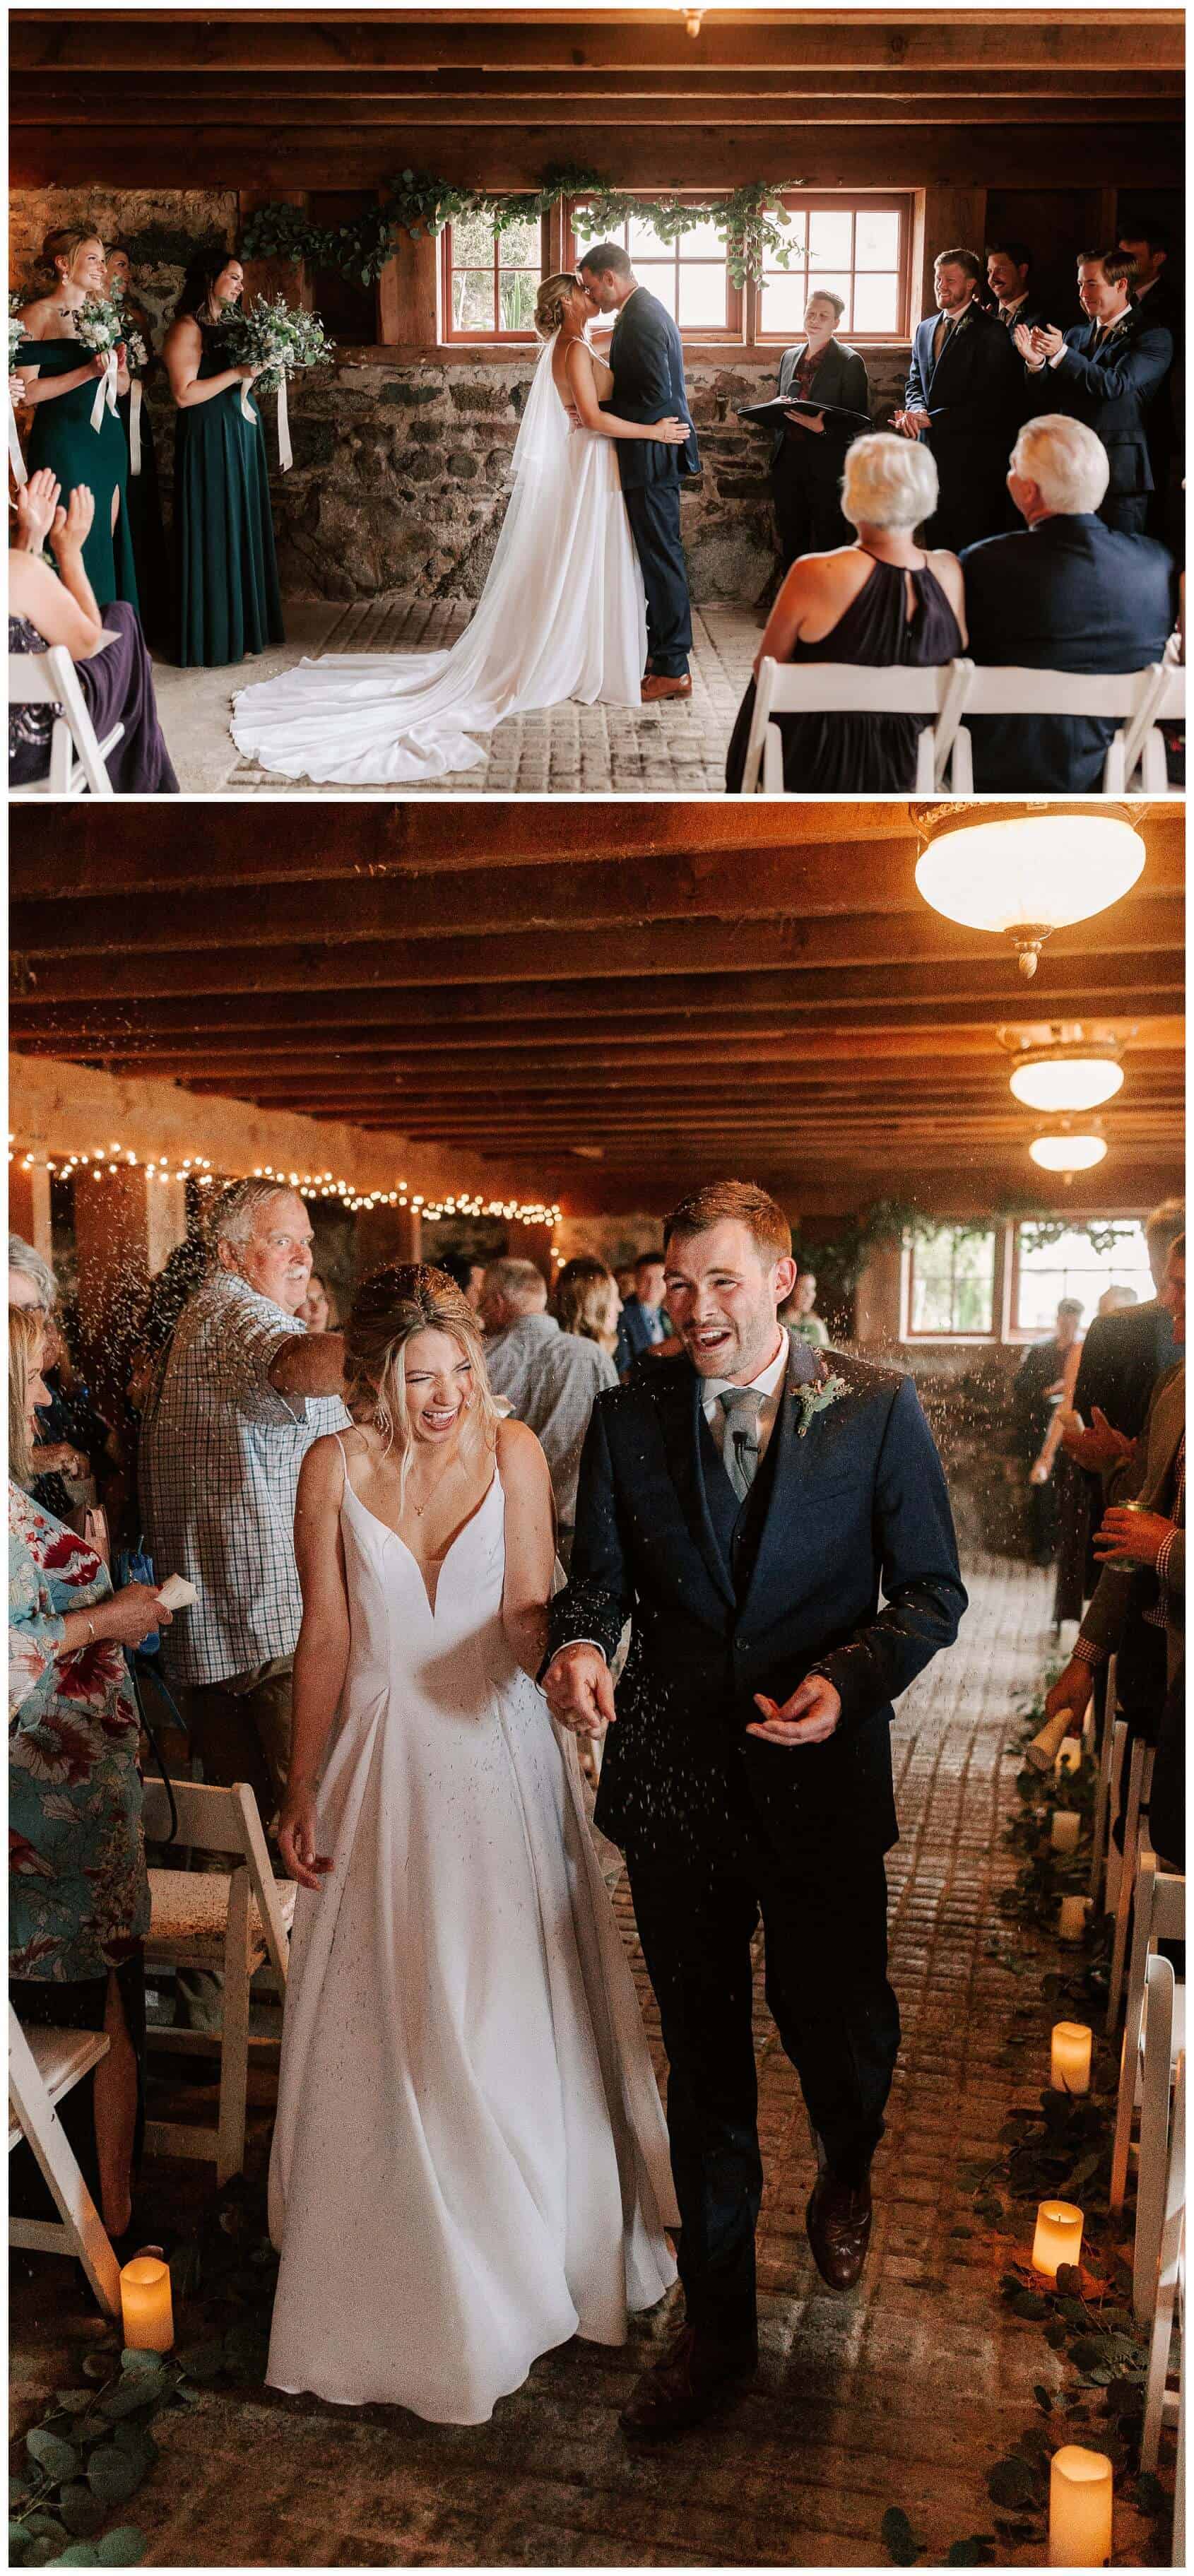 Crockett Farm wedding ceremony photos by Luma Weddings